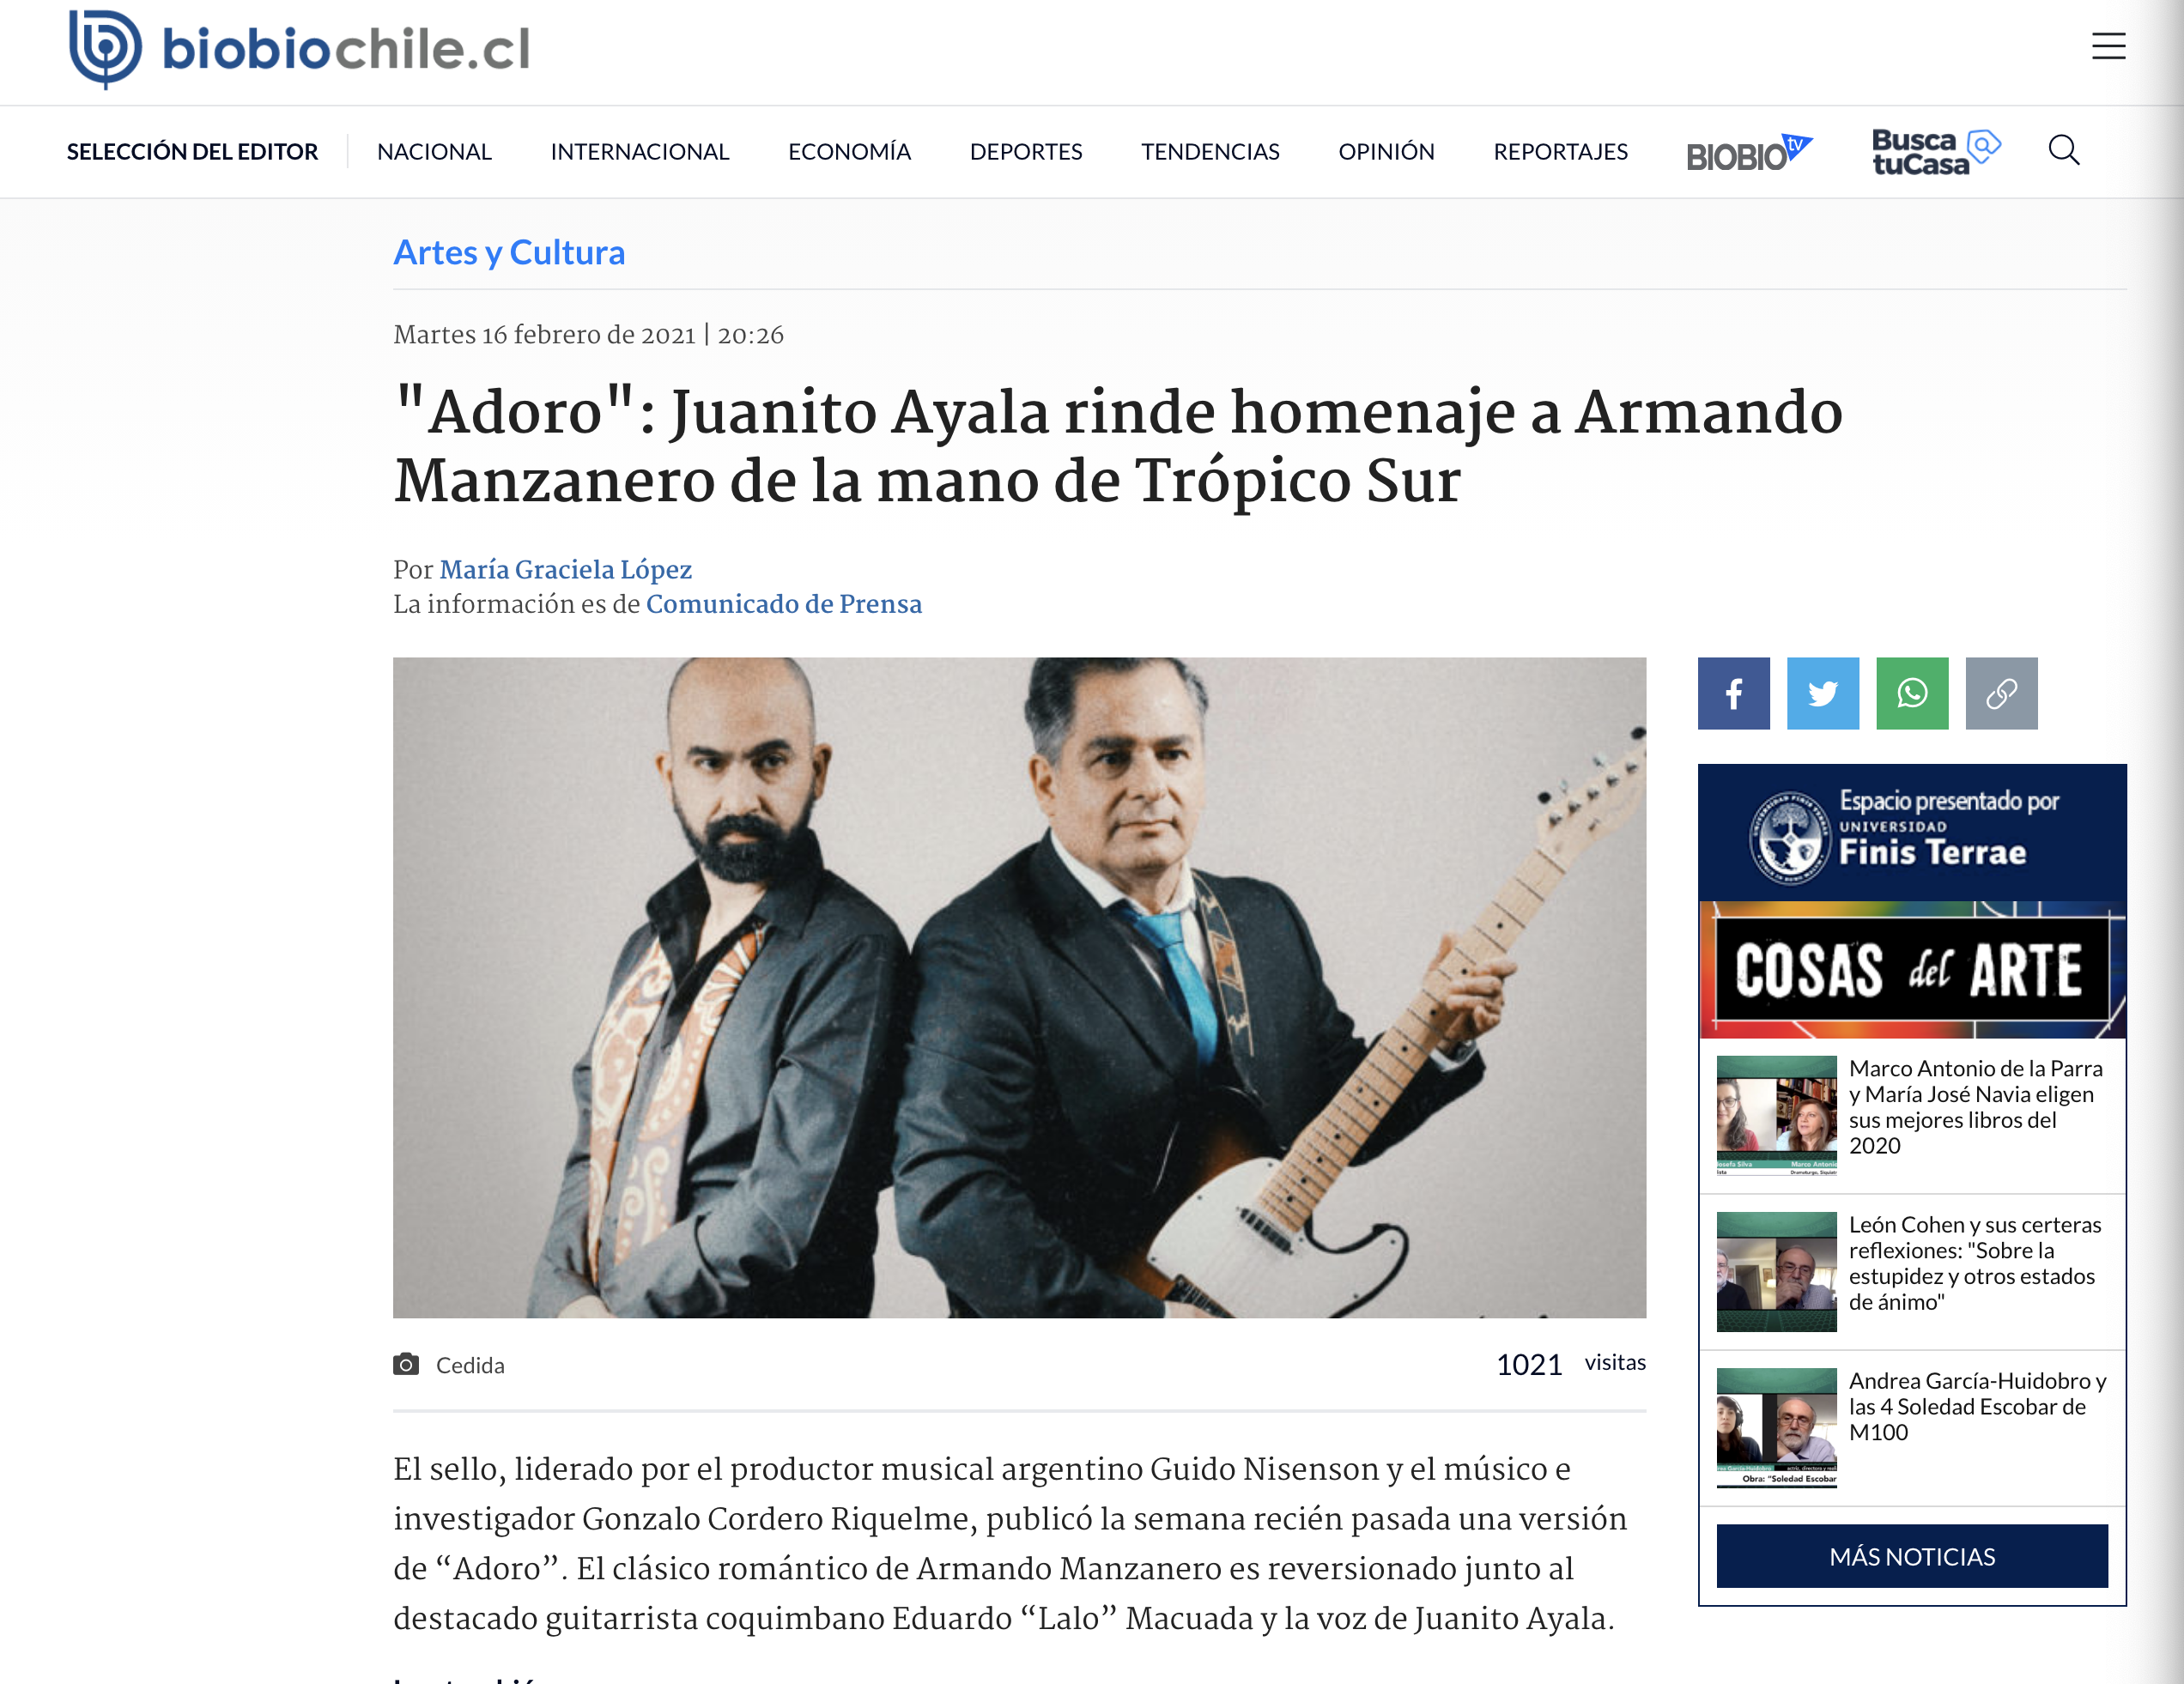 "Adoro": Juanito Ayala rinde homenaje a Armando Manzanero de la mano de Trópico Sur